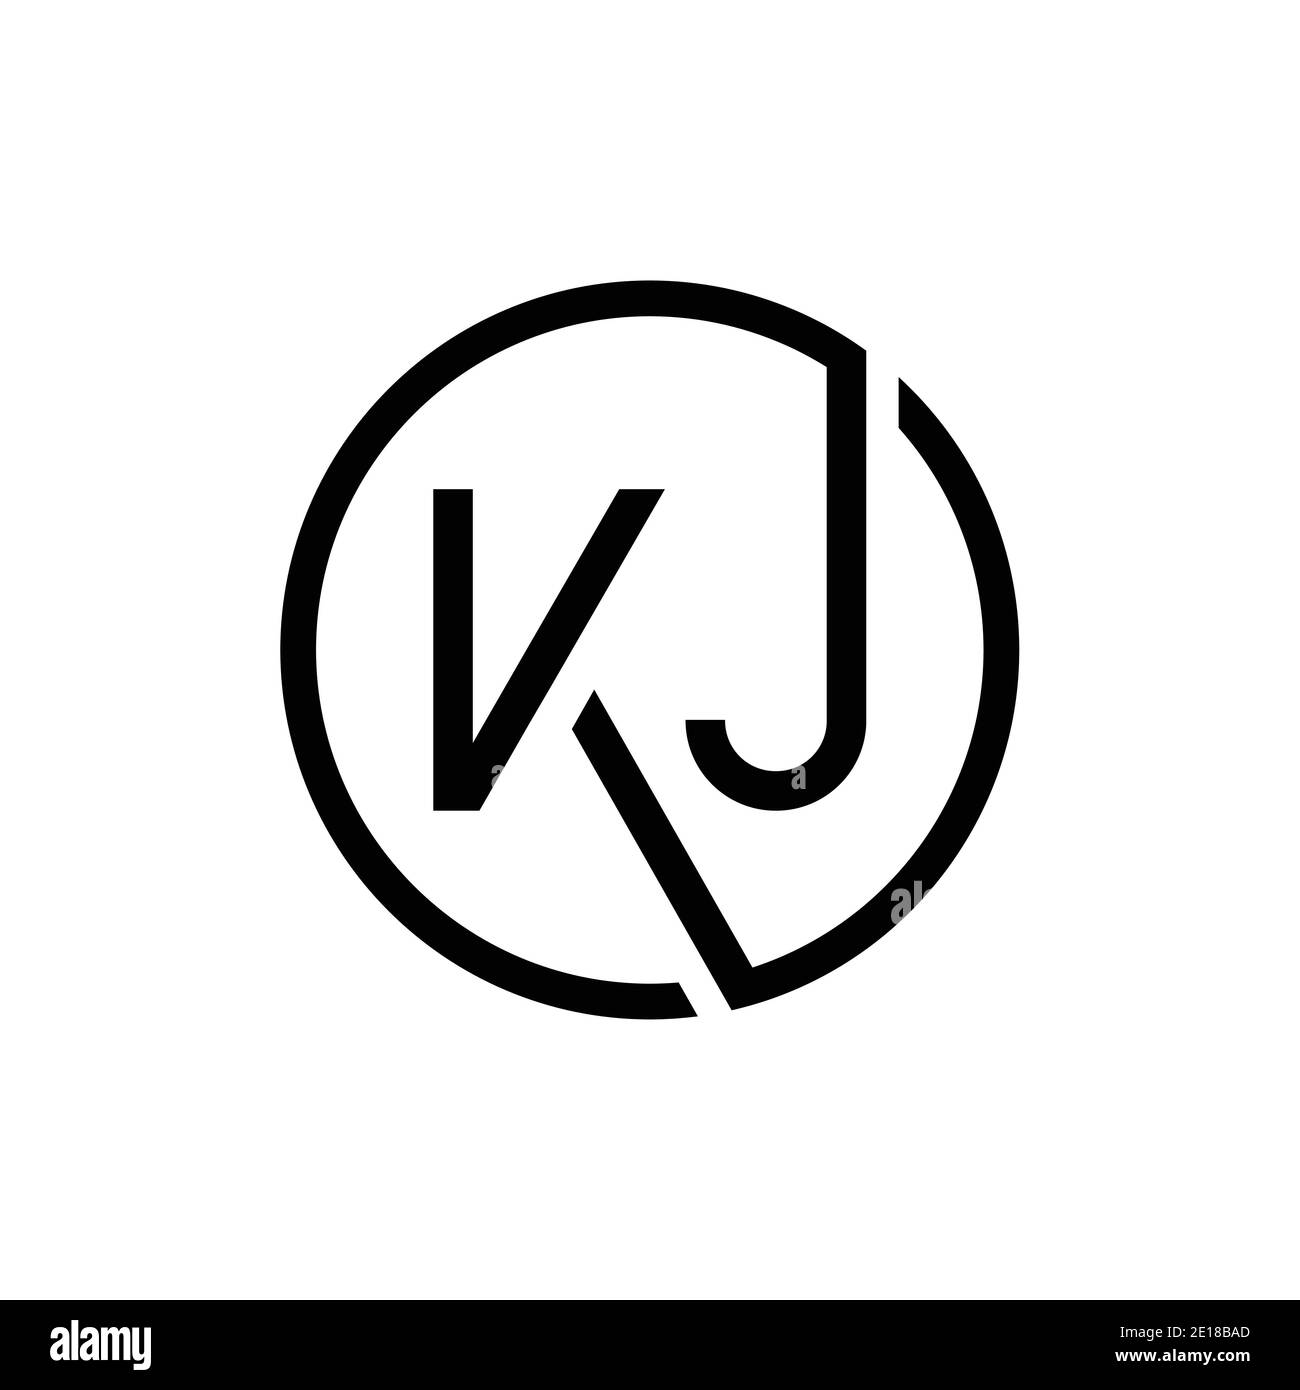 Modello vettoriale di progettazione del logo KJ con lettera collegata. Creative Circle KJ minimal, disegno piatto del logo illustrazione vettoriale Illustrazione Vettoriale